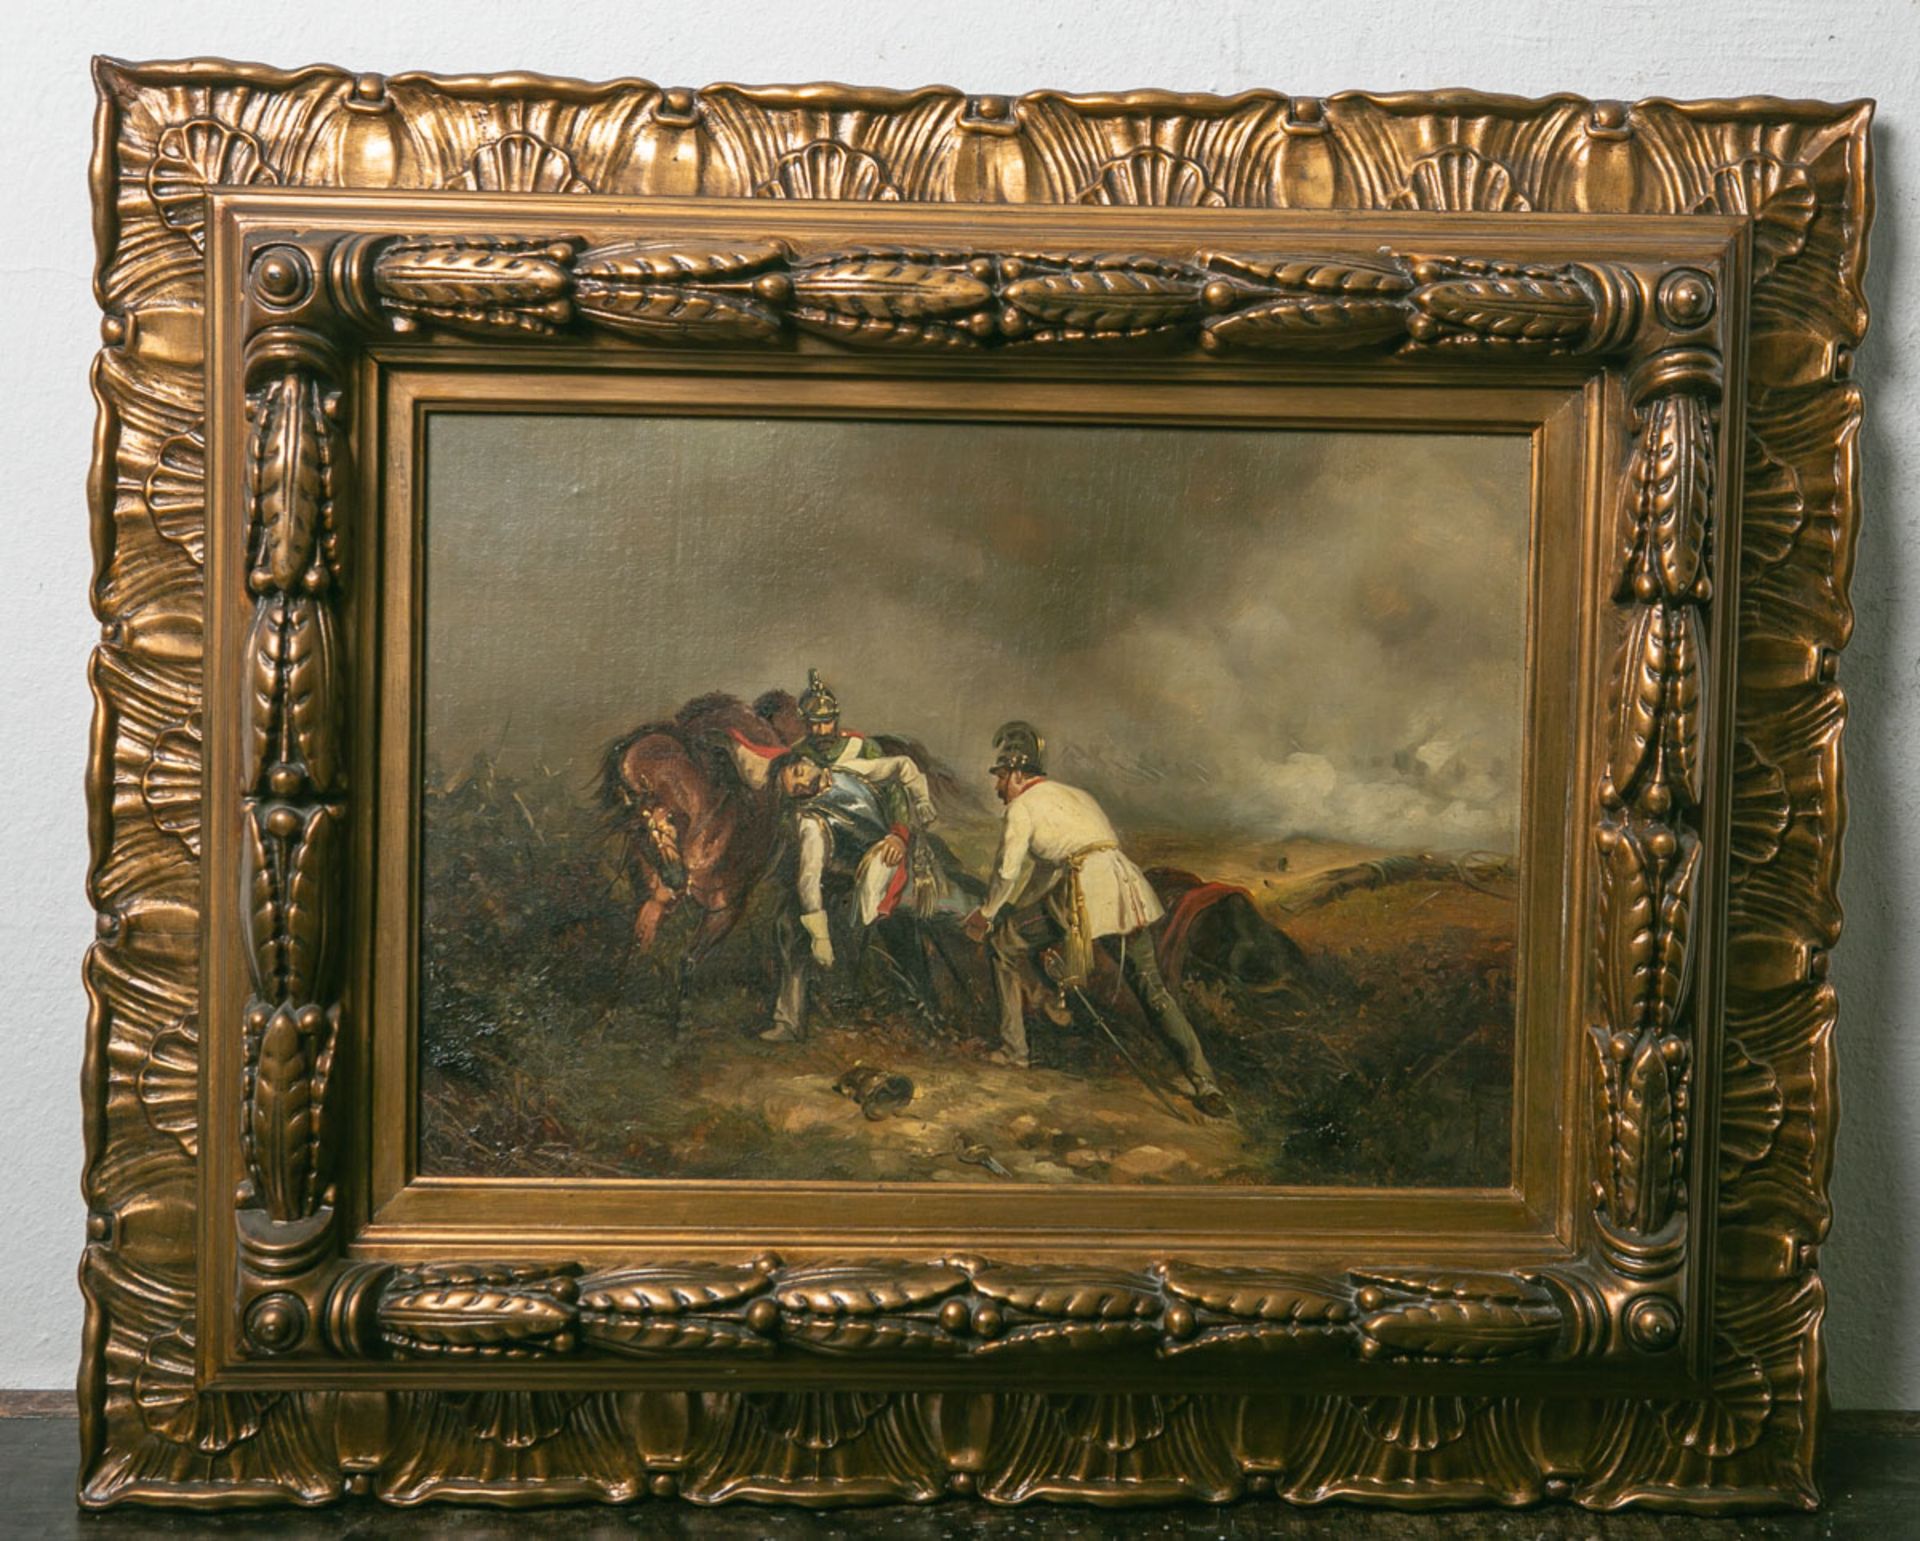 Unbekannter Künstler (wohl 19. Jahrhundert), Szenerie aus dem deutsch/französischen Krieg1870/71,